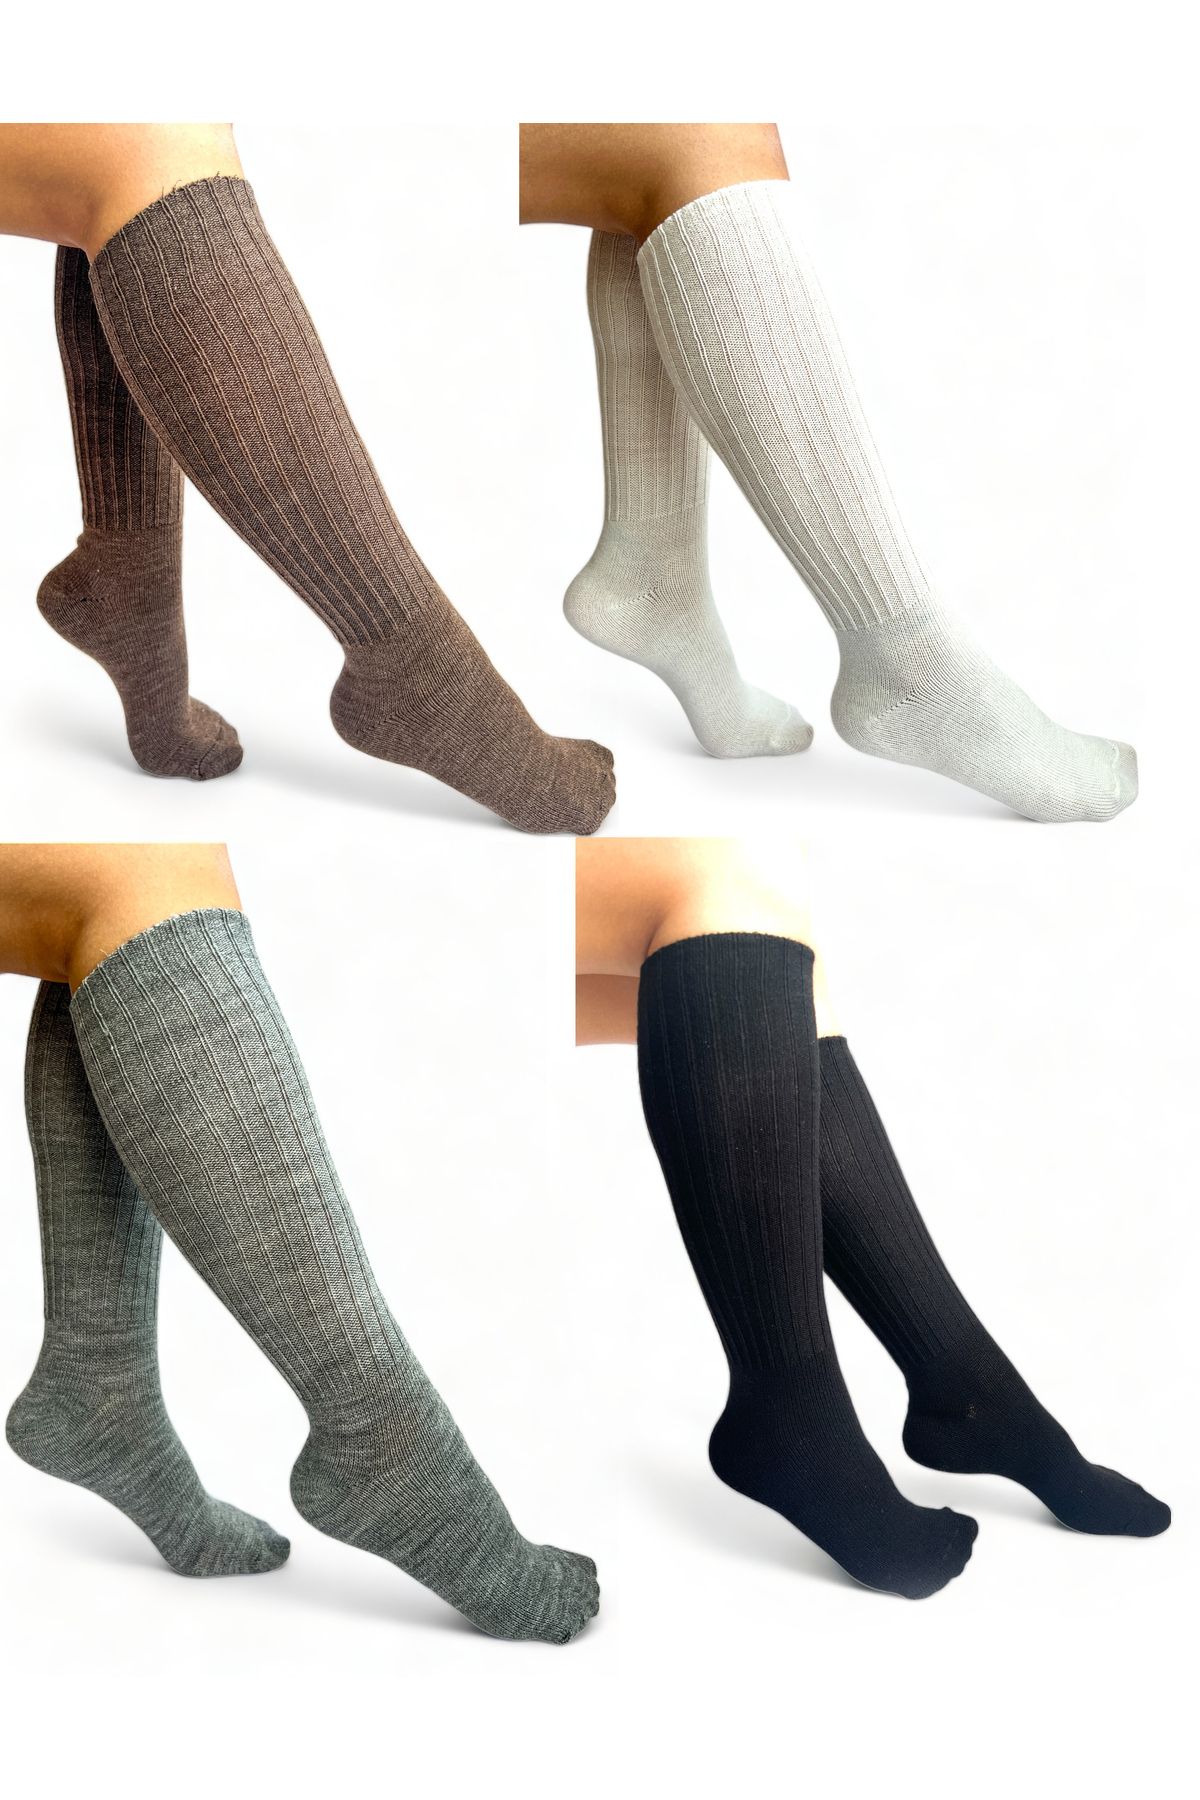 CİHO Socks 4 Çift Uzun Diz Altı Kışlık Kadın Yünlü Çizme Uyku Çorabı Soft Touch Siyah-beyaz-gri-kahve